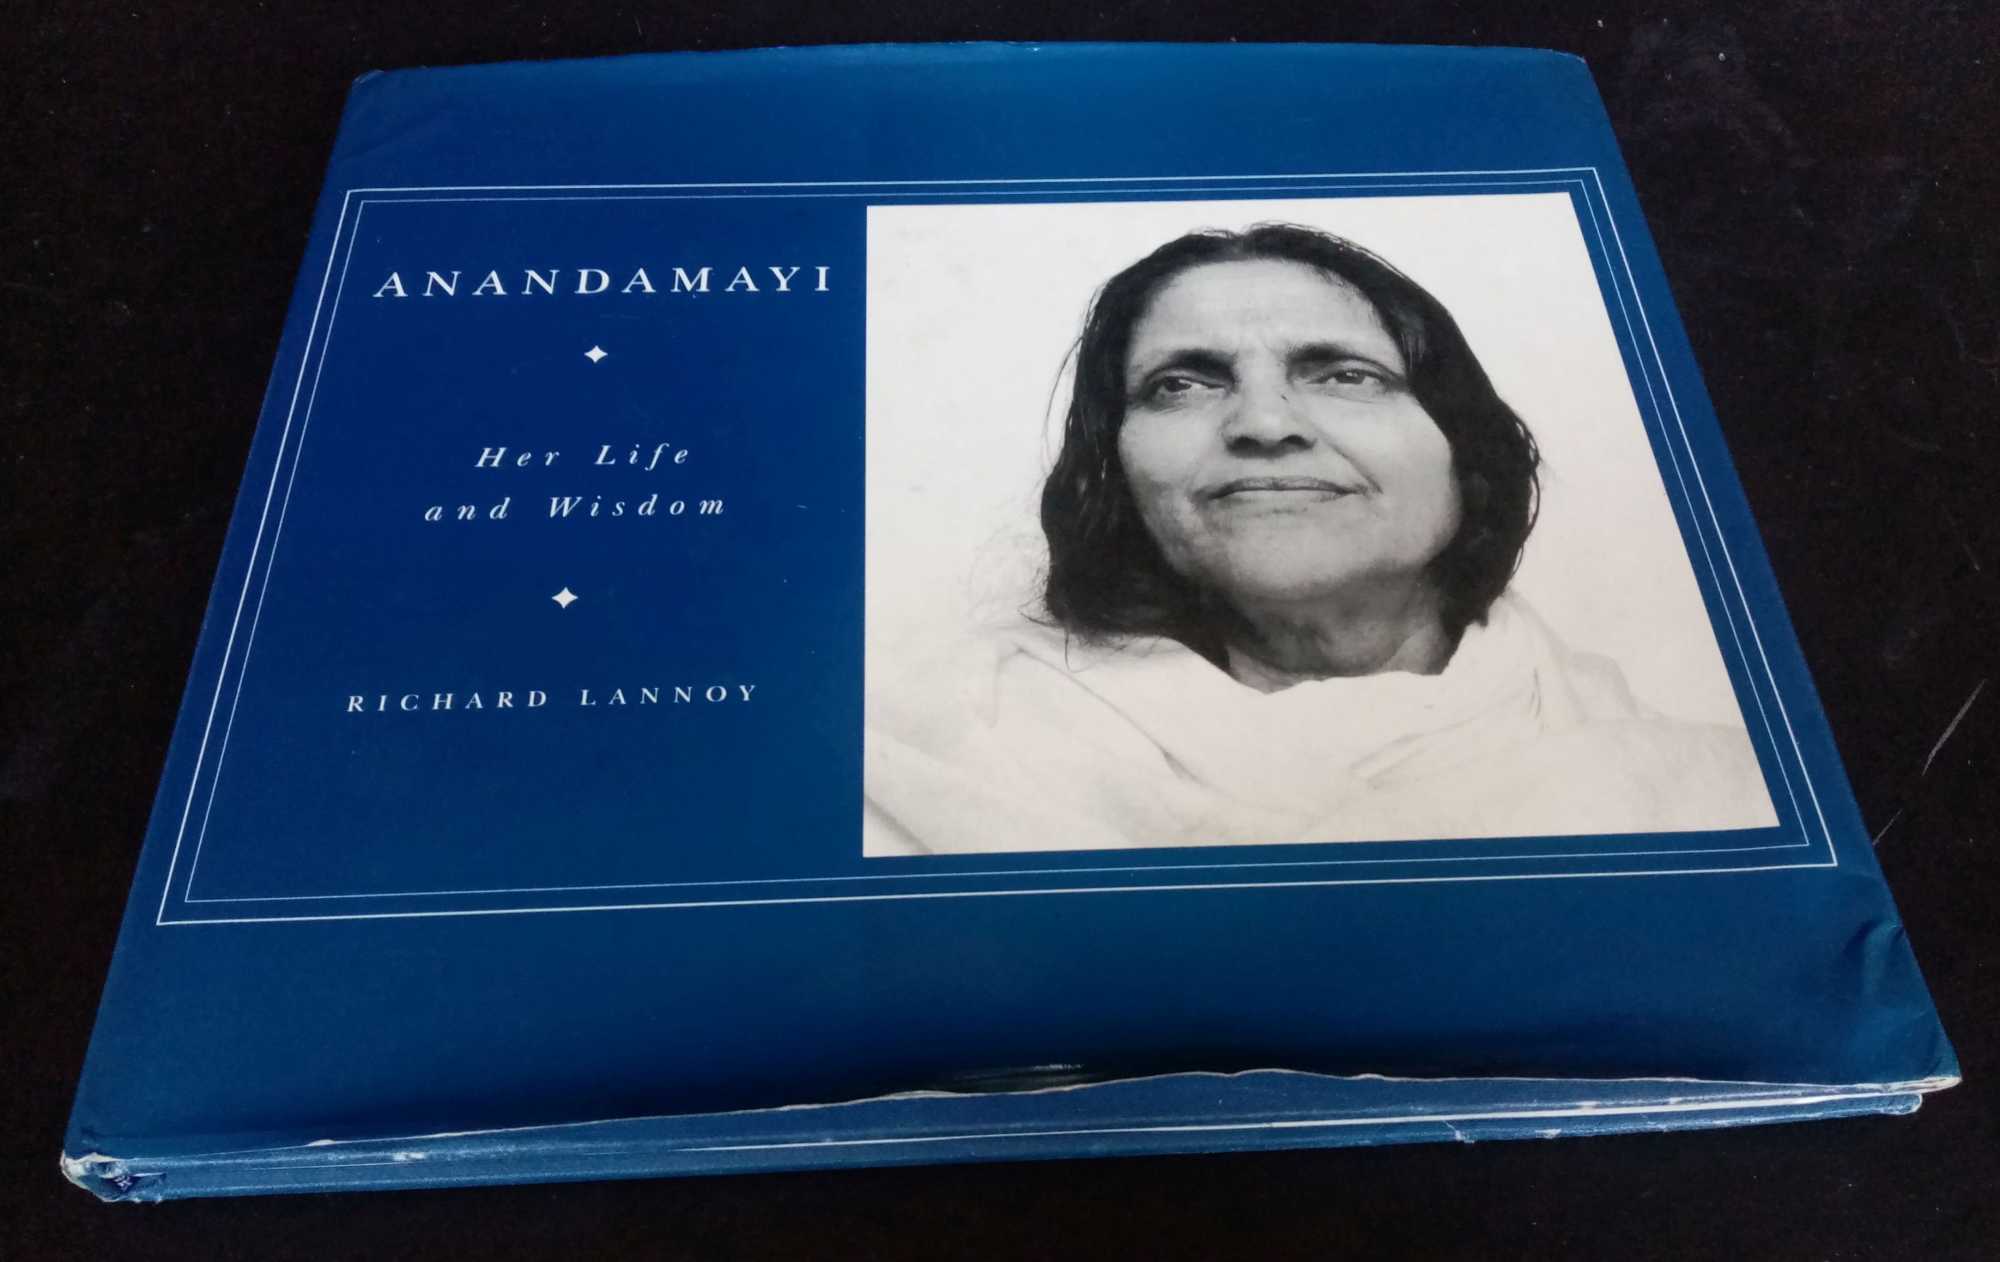 Richard Lannoy - Anandamayi: Her Life and Wisdom